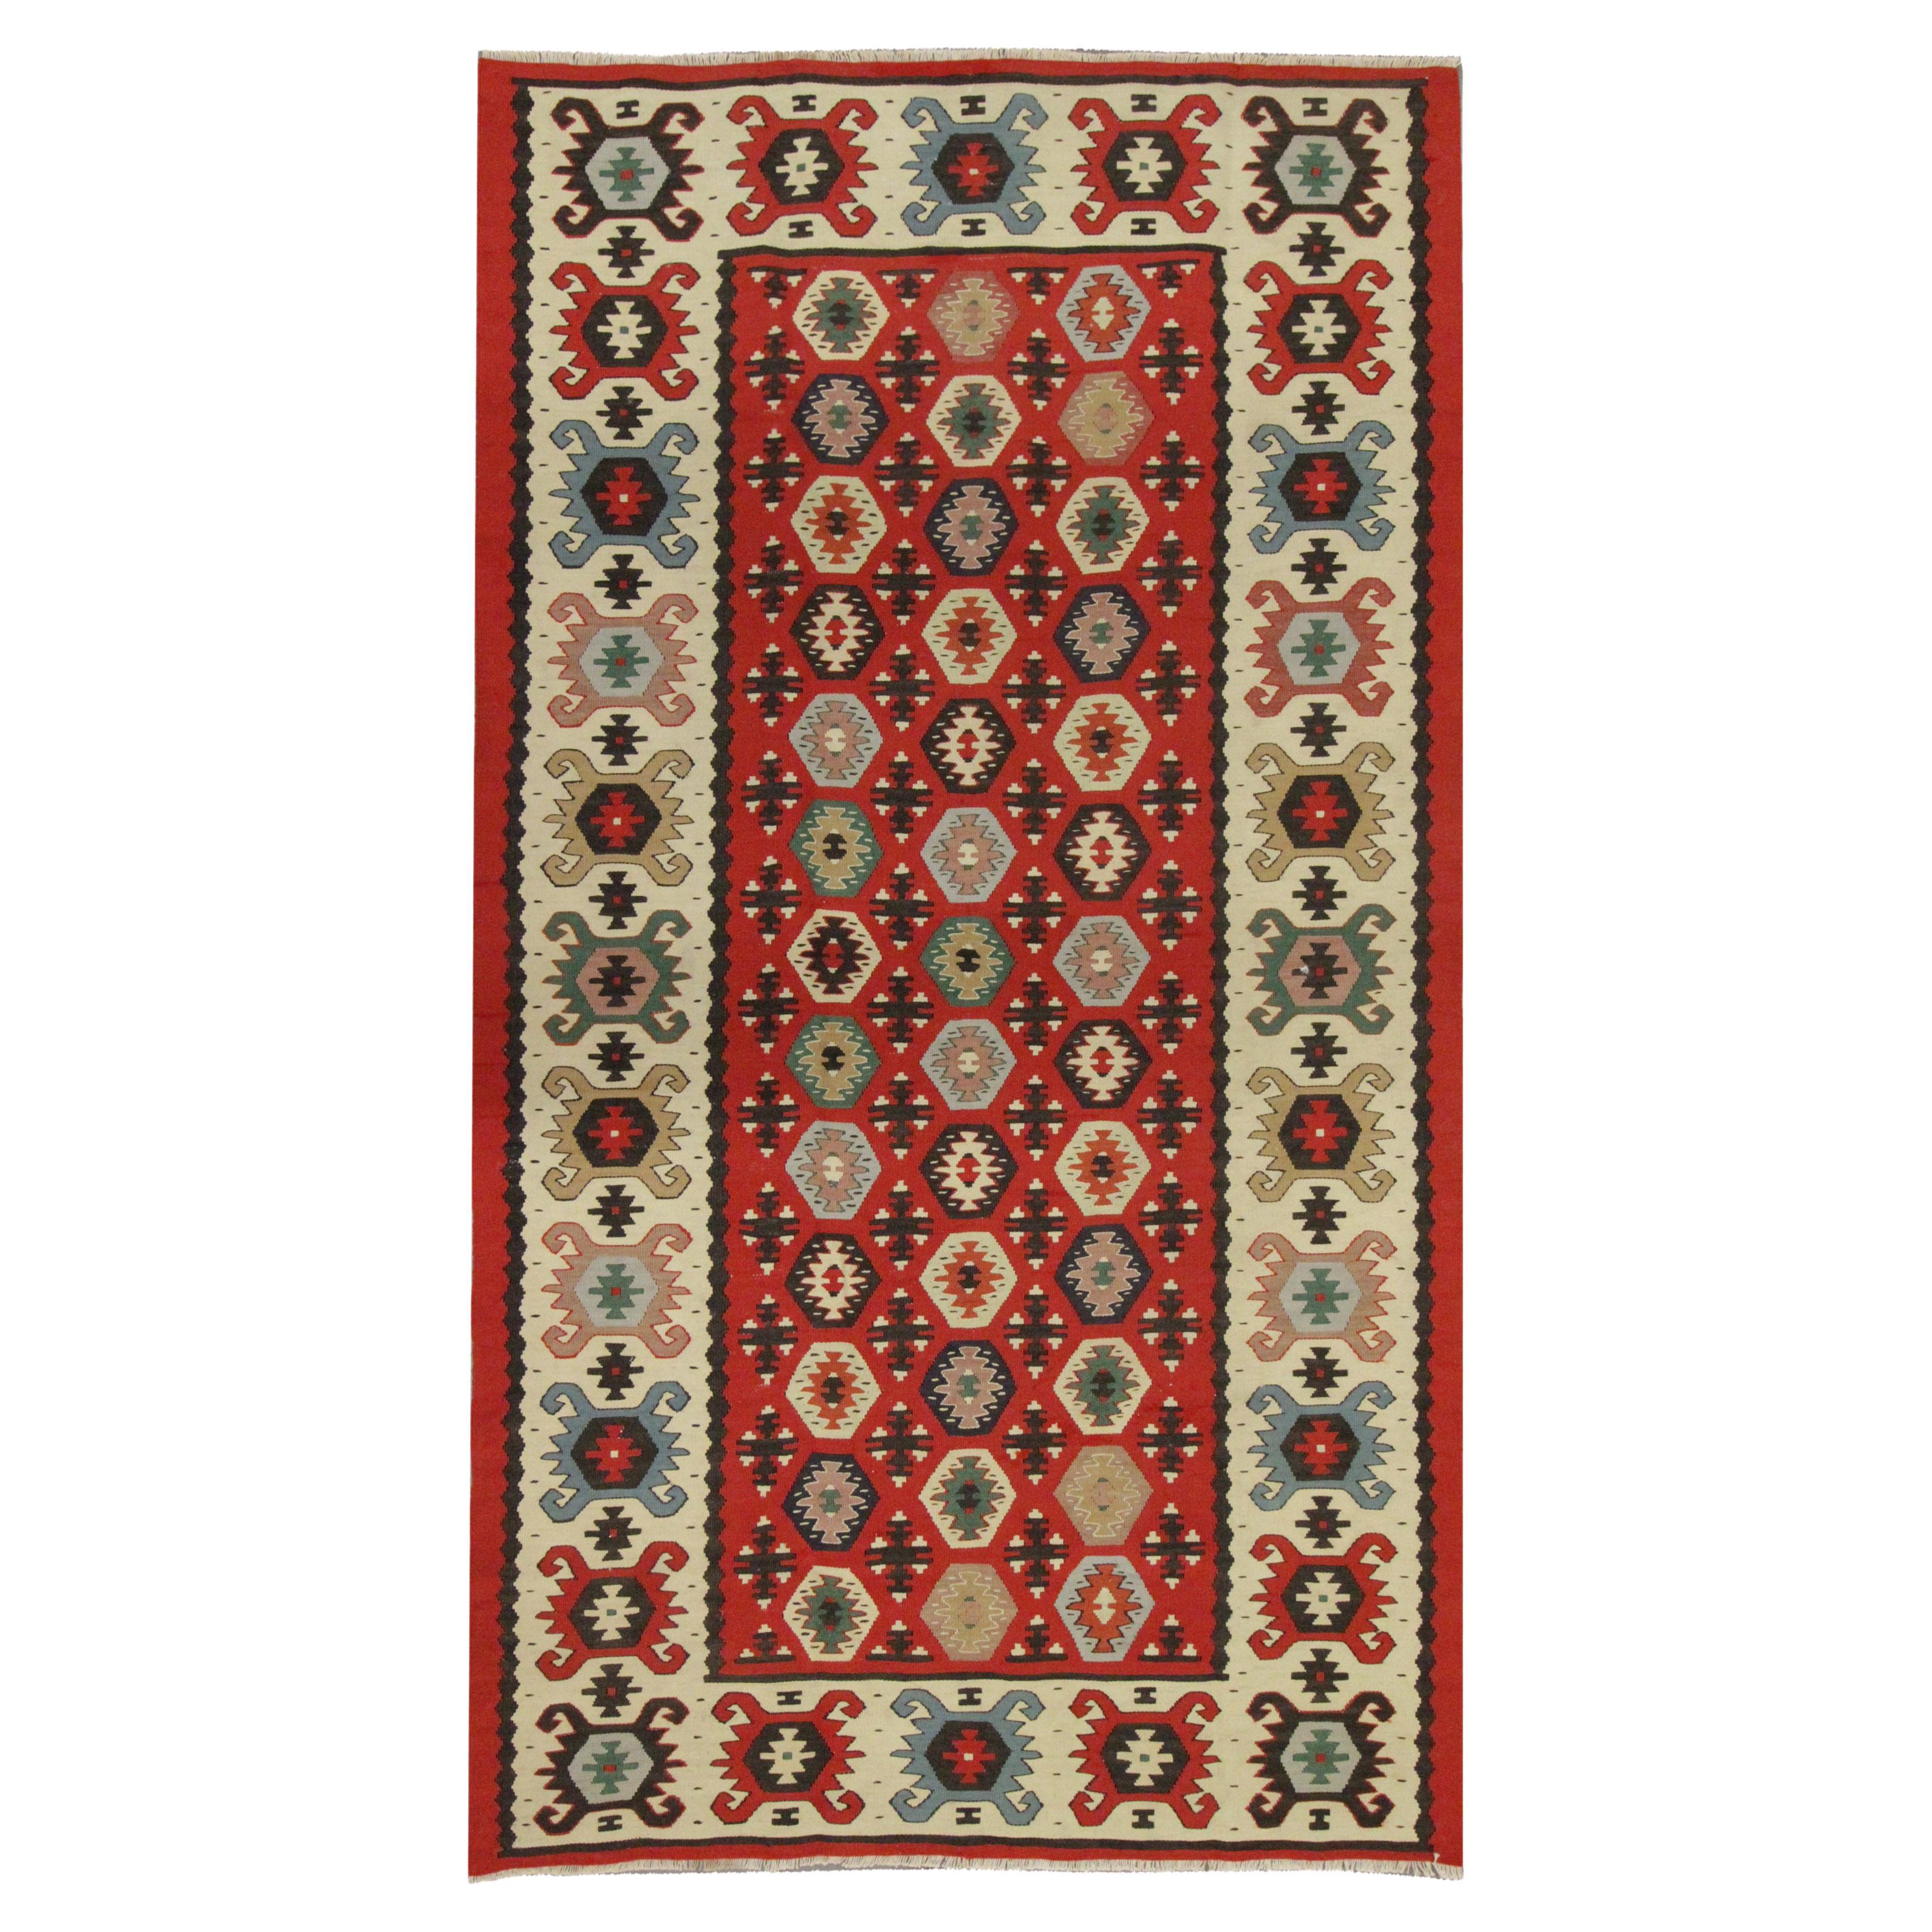 Türkischer handgewebter Teppich aus roter Wolle, Sarkoy-Kelim-Teppich